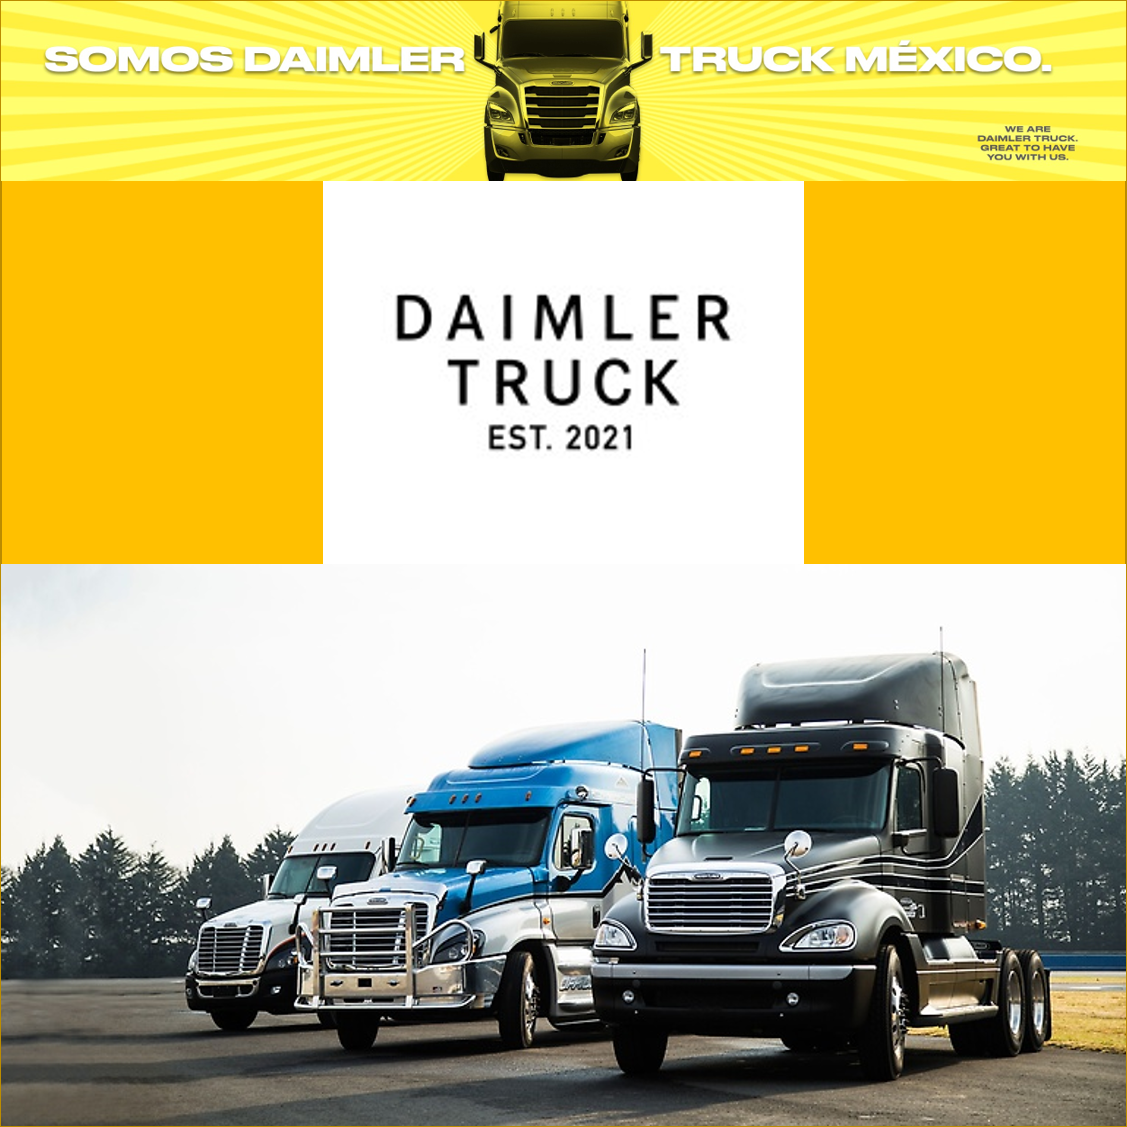 VACANTE - Intern Project / Daimler Truck México